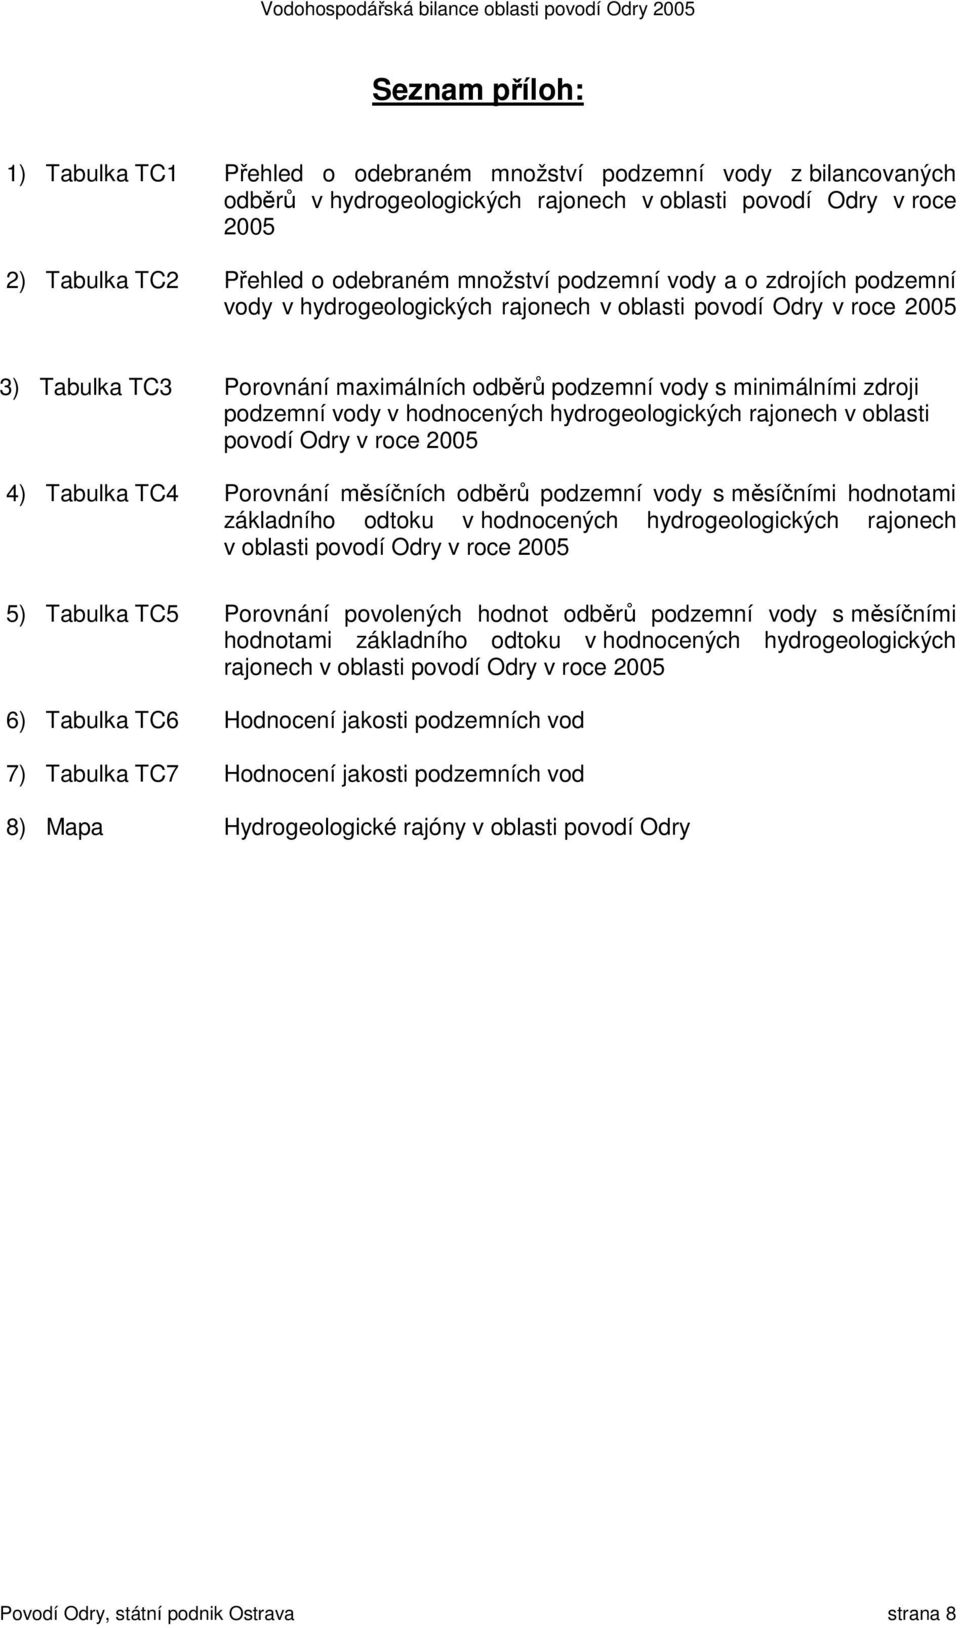 podzemní vody v hodnocených hydrogeologických rajonech v oblasti povodí Odry v roce 2005 4) Tabulka TC4 Porovnání měsíčních odběrů podzemní vody s měsíčními hodnotami základního odtoku v hodnocených